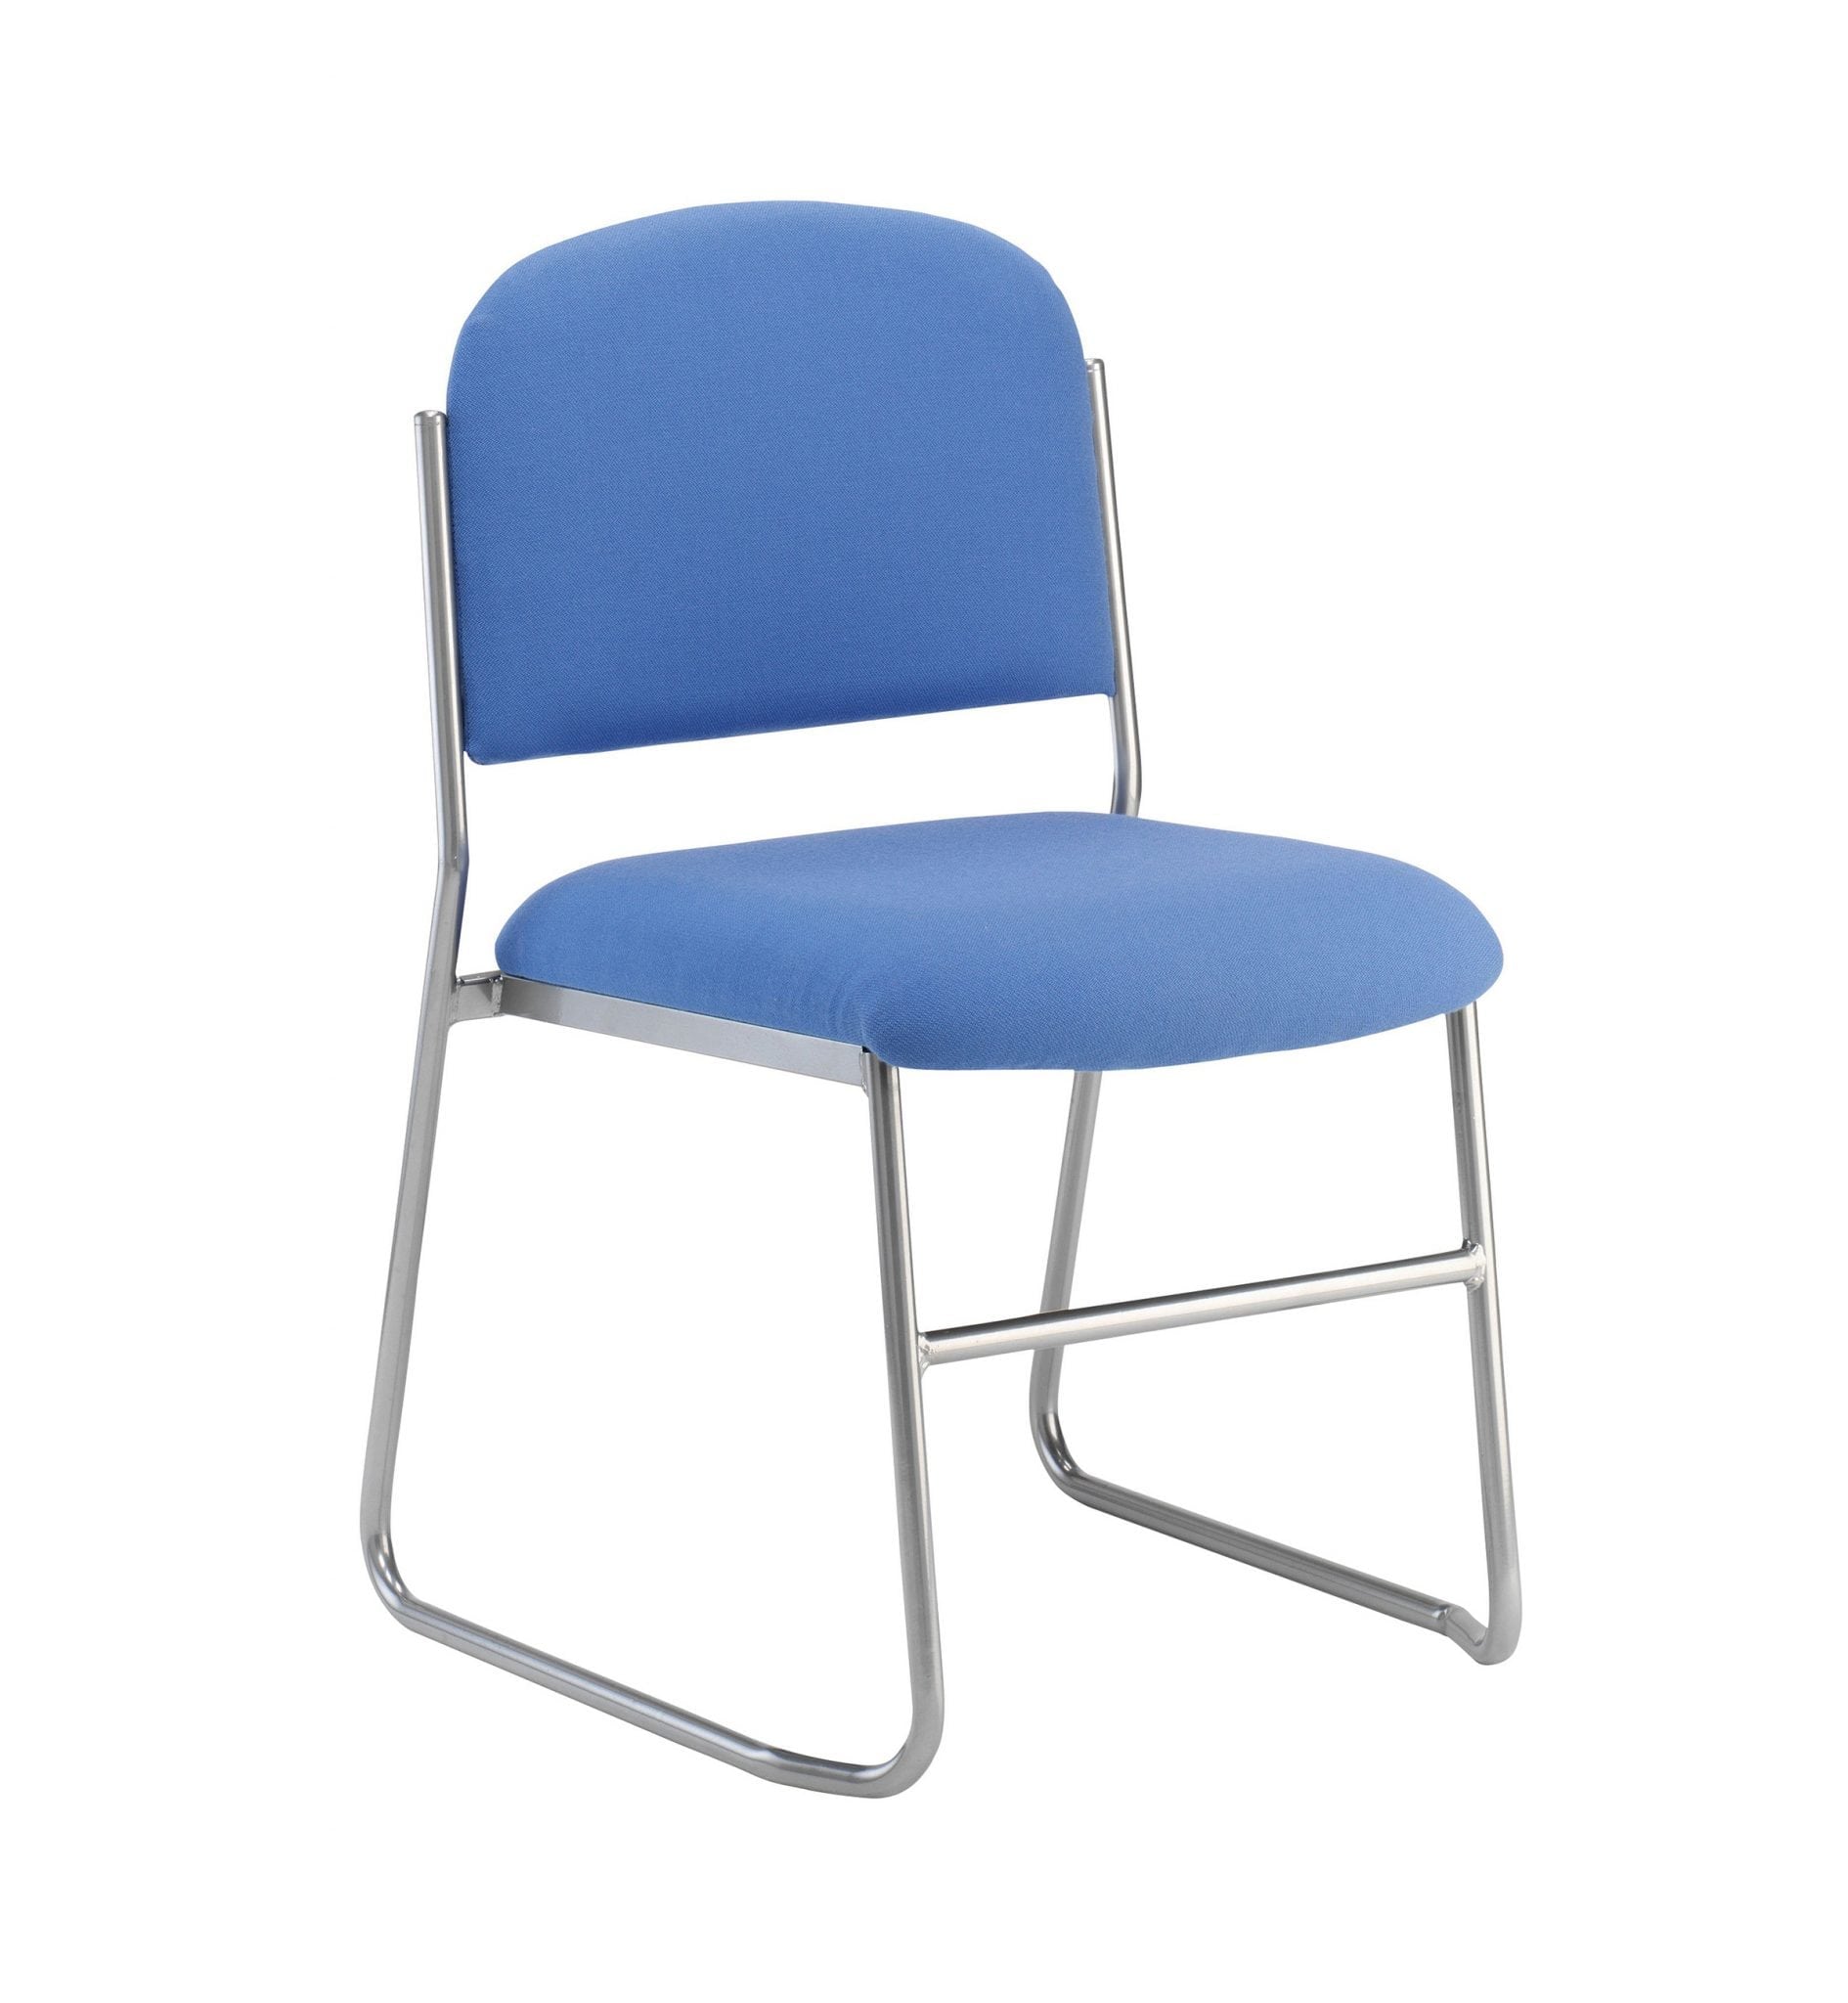 Skolar chair with blue fabric